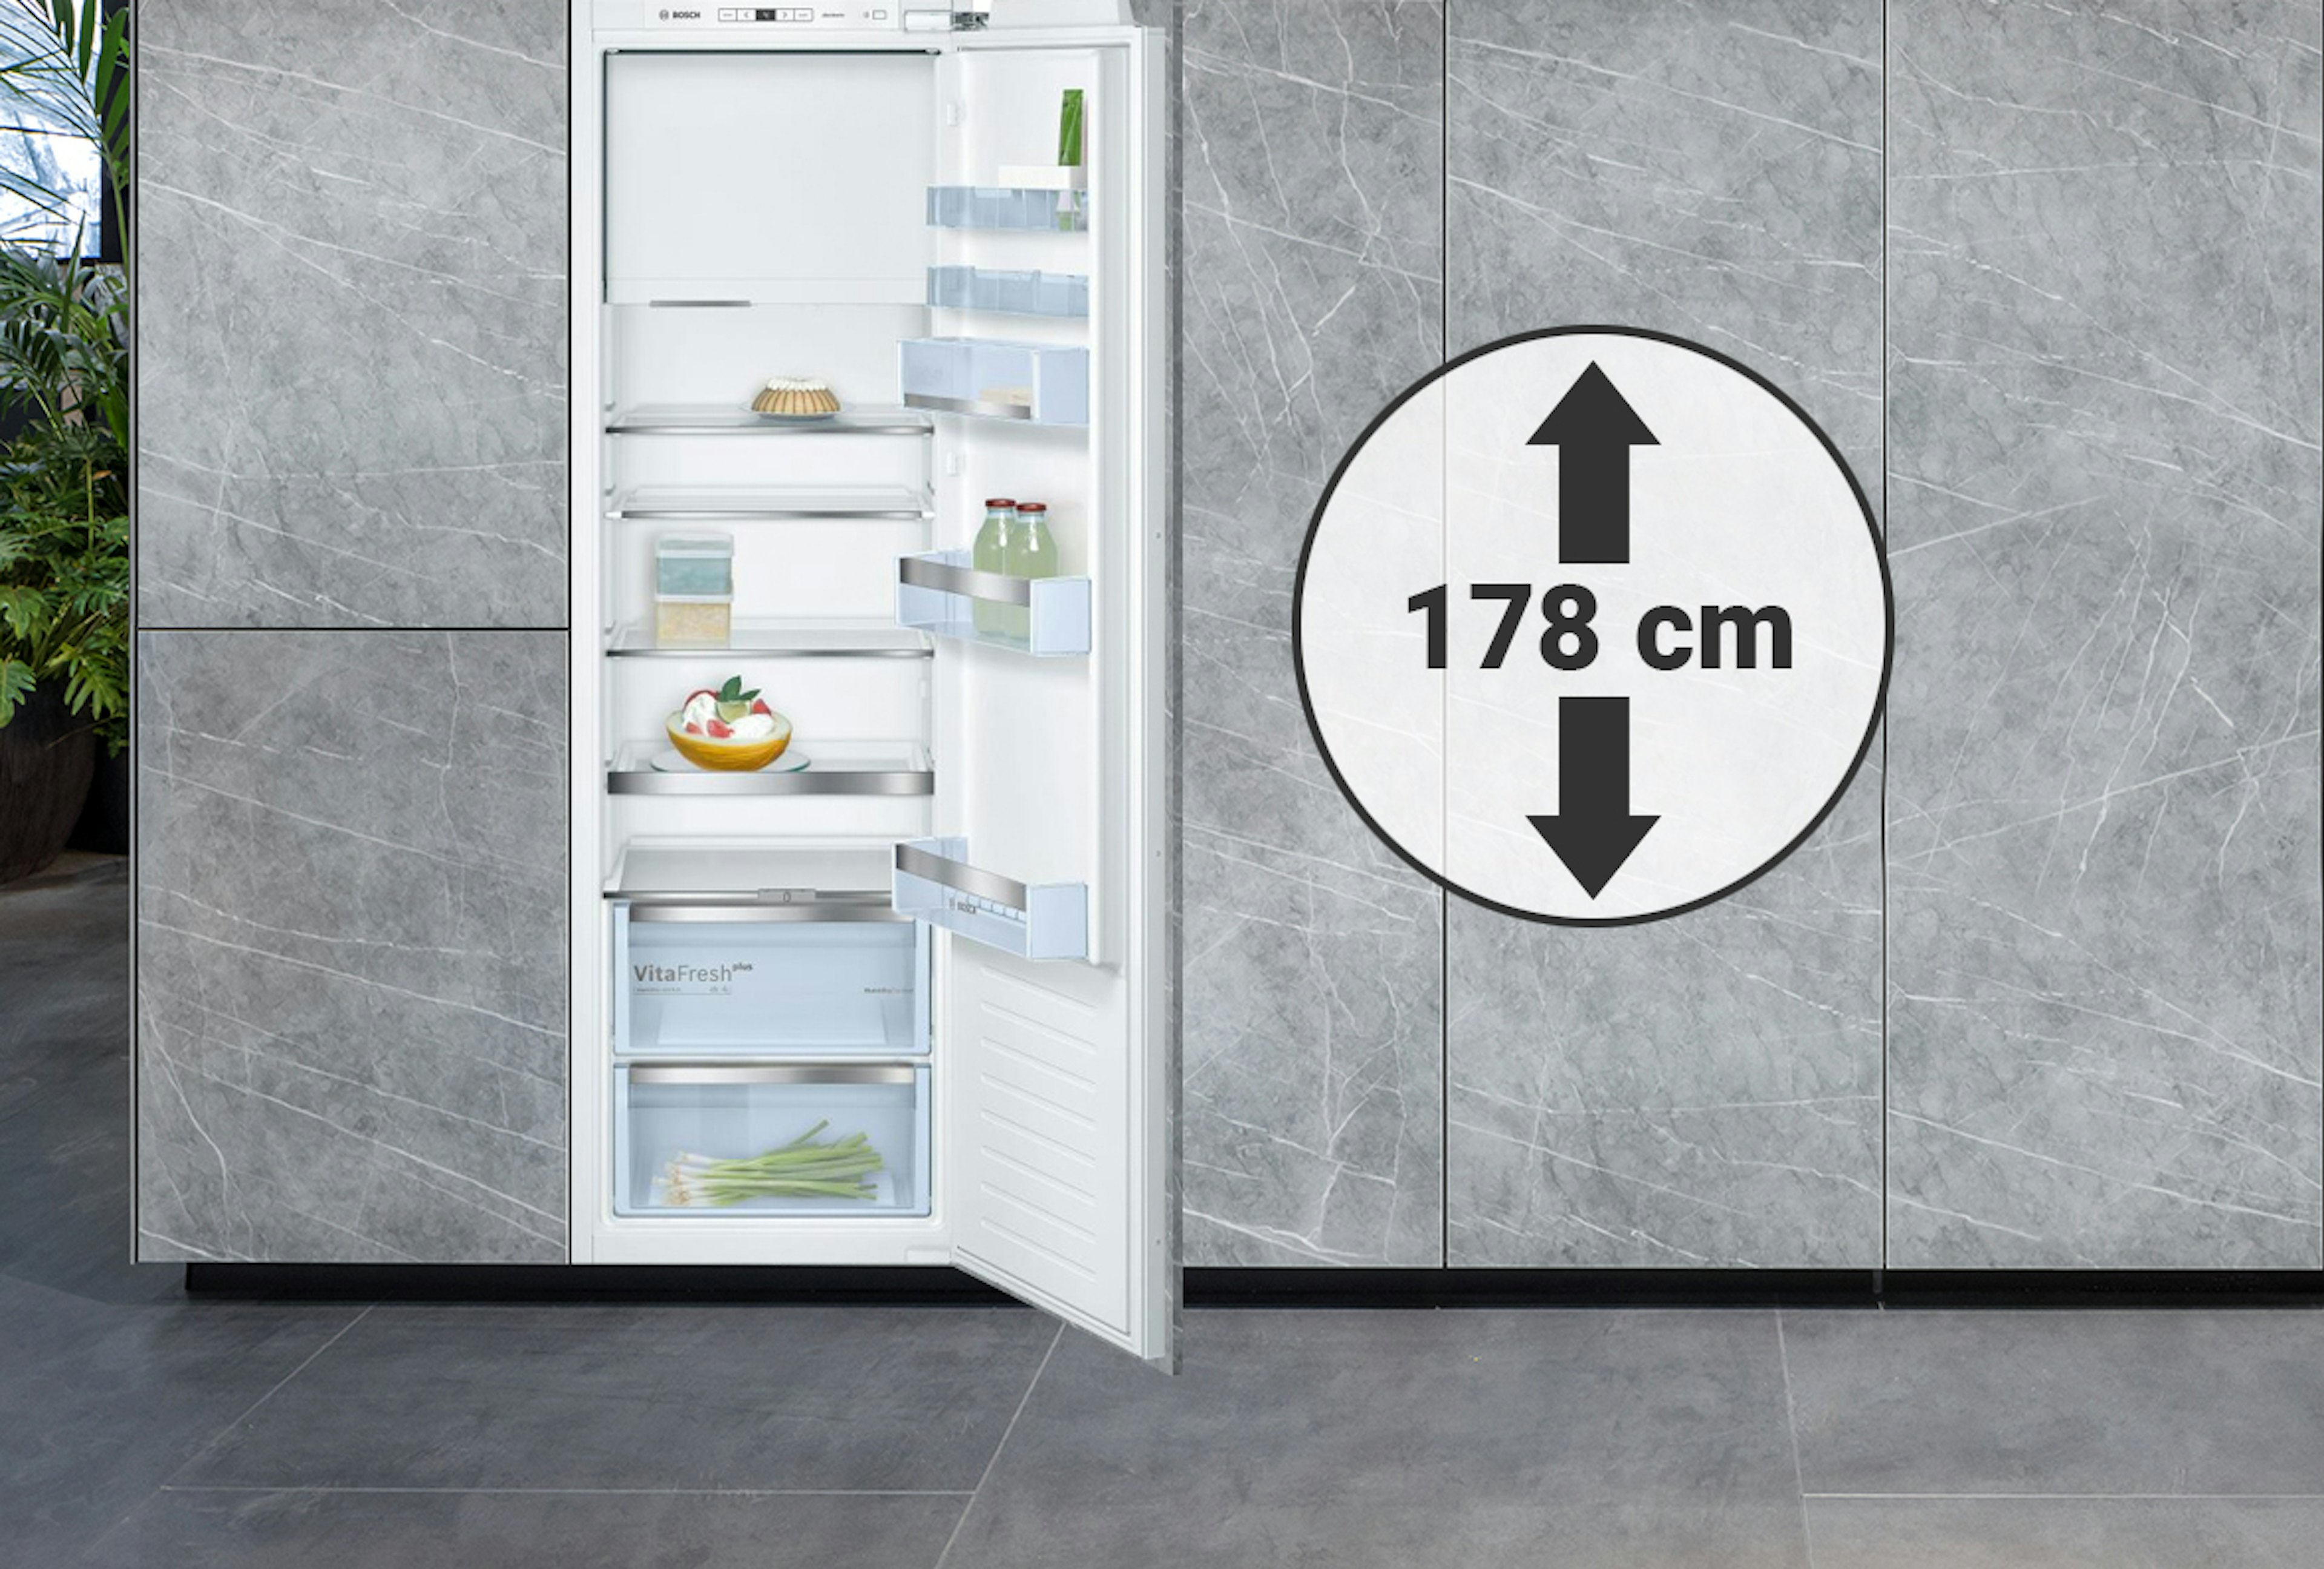 Inbouw koelkasten geschikt voor een nis van rond de 178 cm hoog